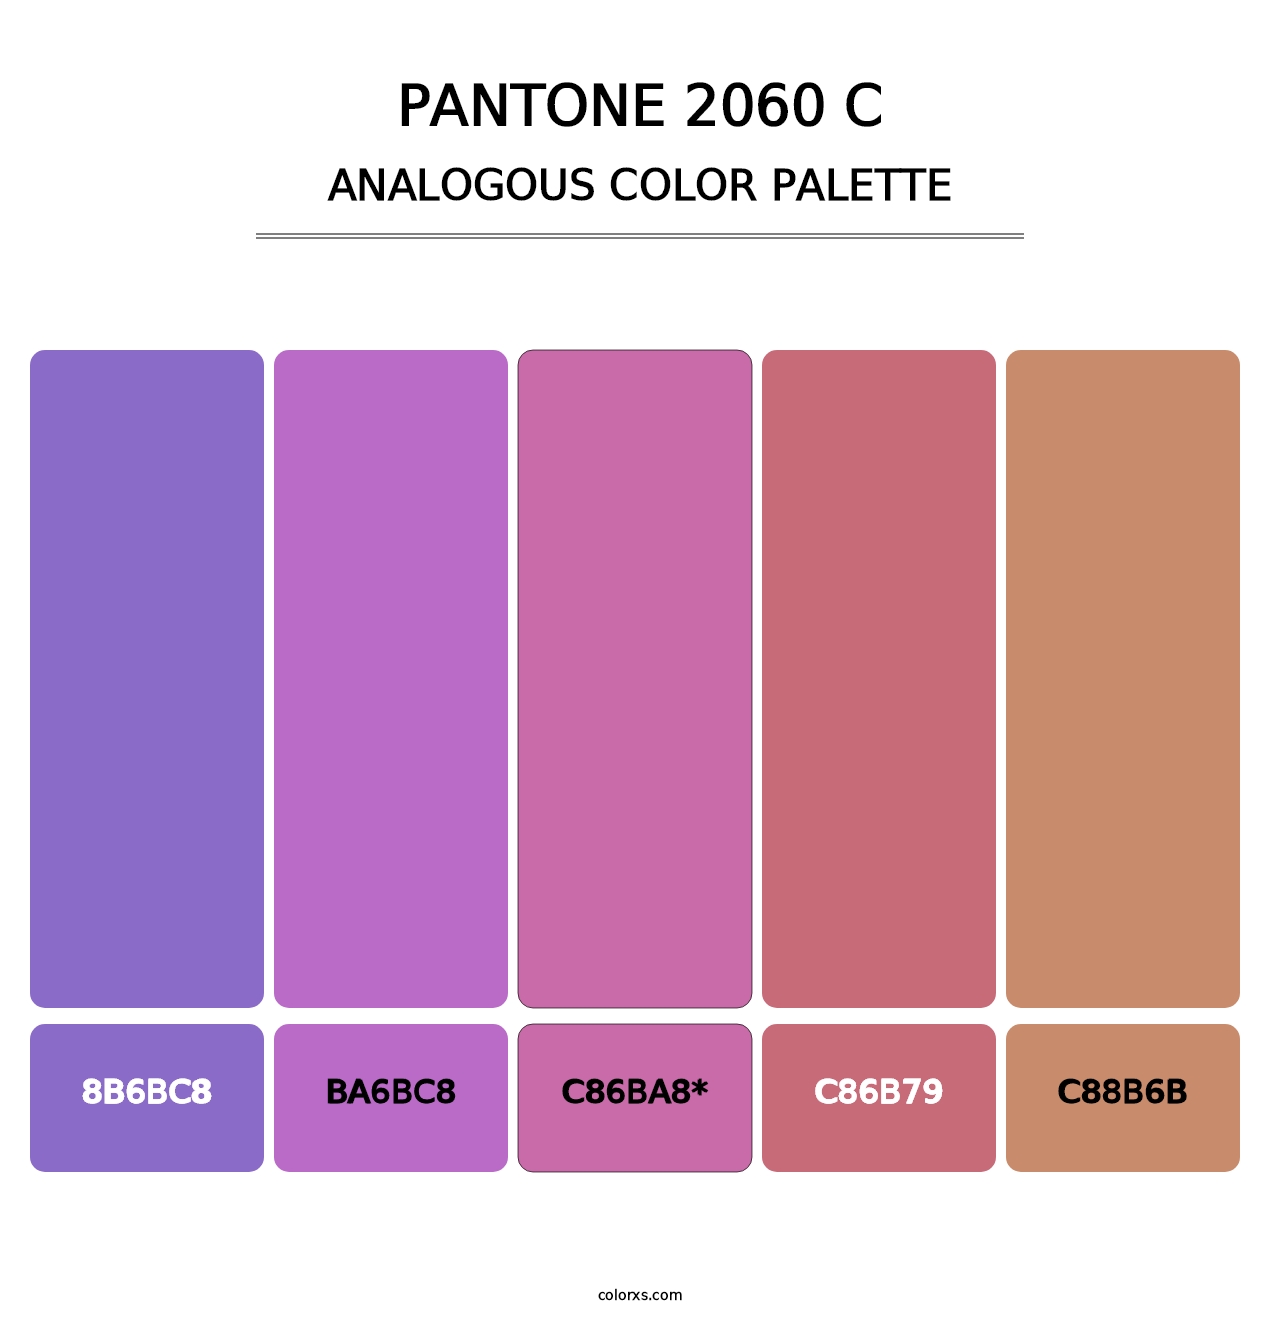 PANTONE 2060 C - Analogous Color Palette